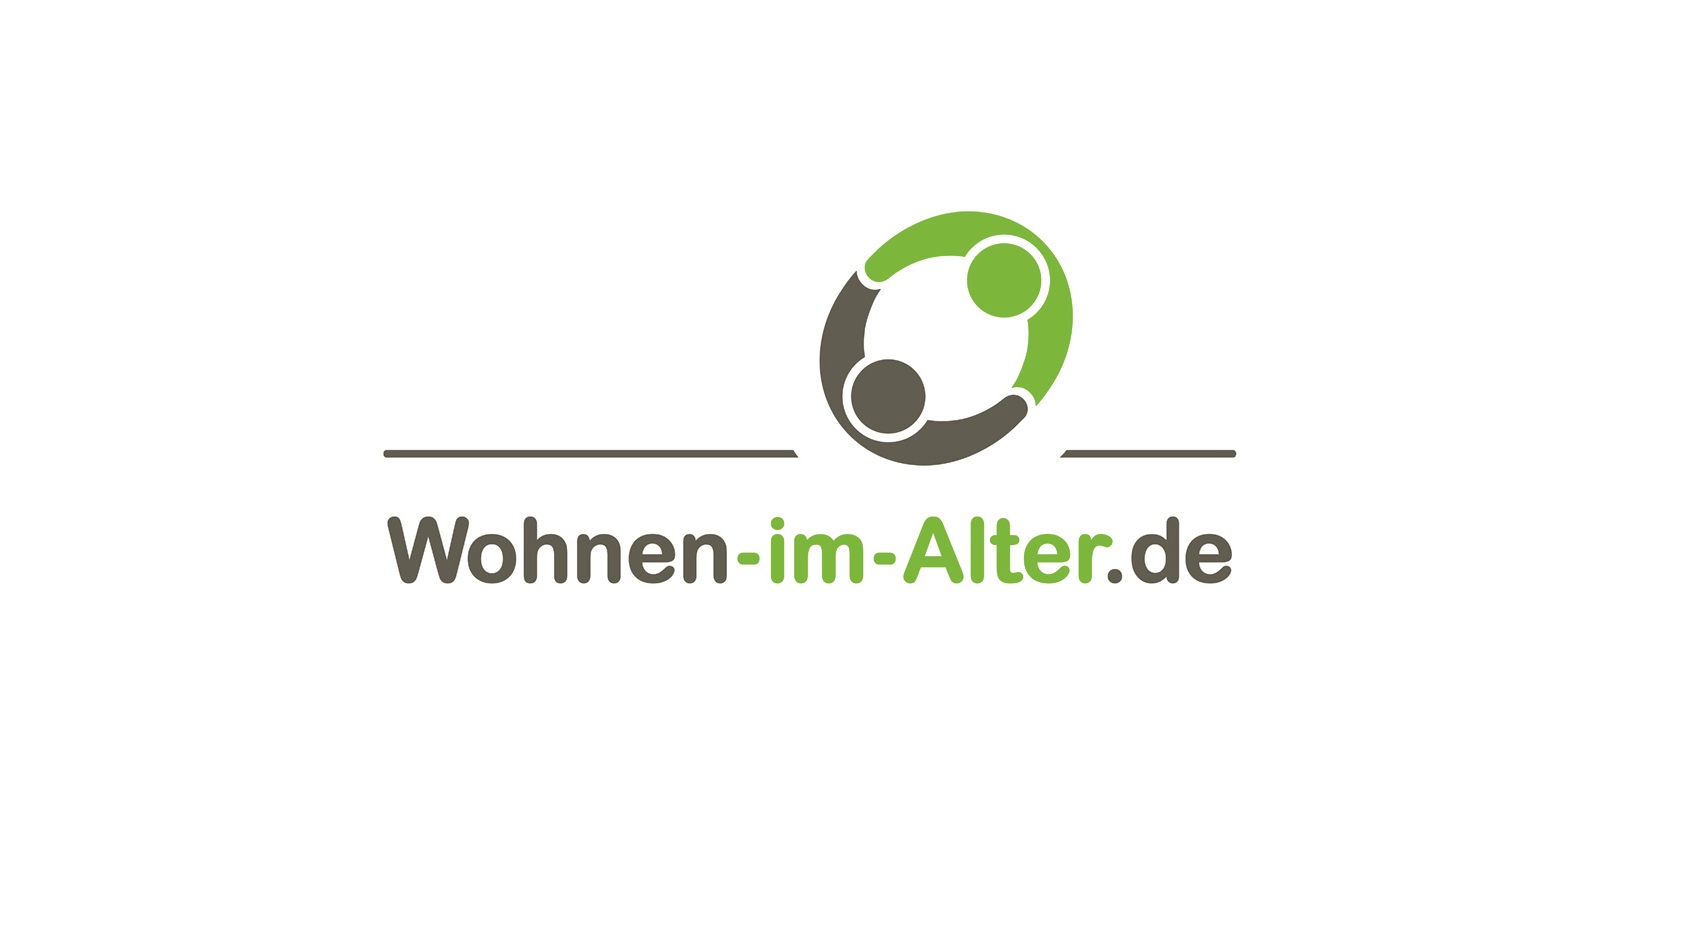 Wohnen-im-Alter.de GmbH mit neuer Geschäftsführerin